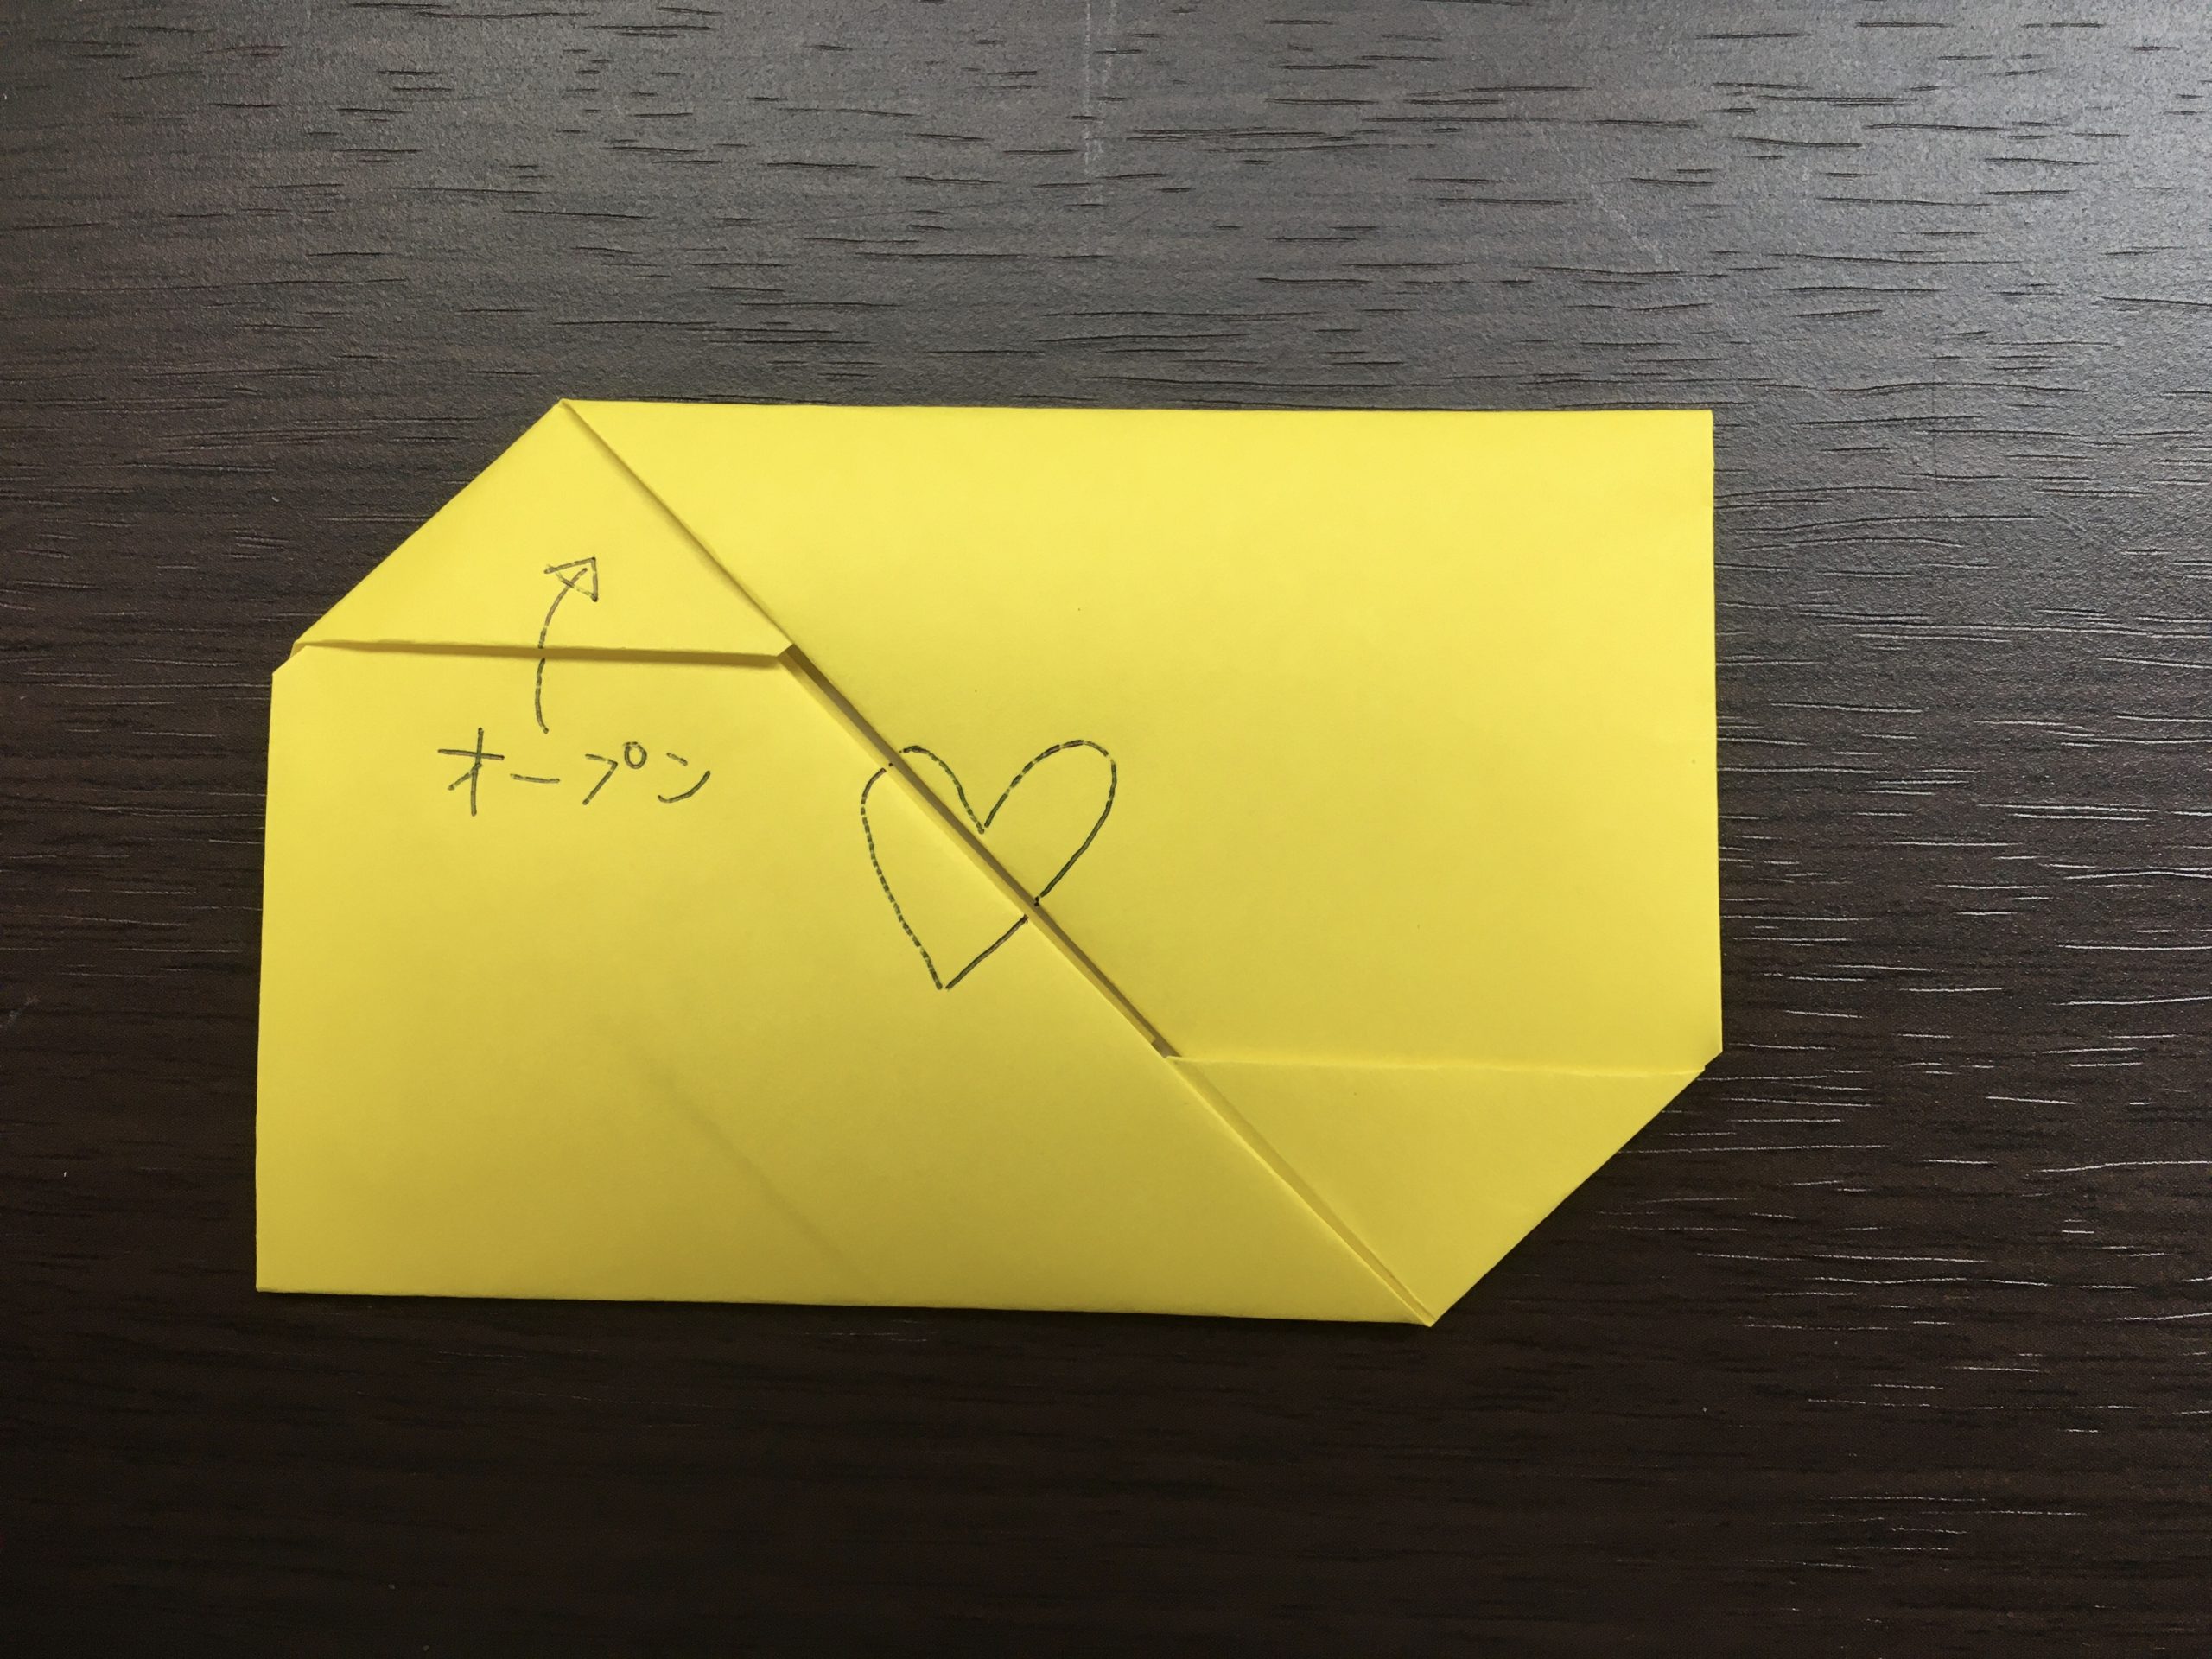 懐かしい手紙の折り方 正方形折り紙のシンプルバージョン